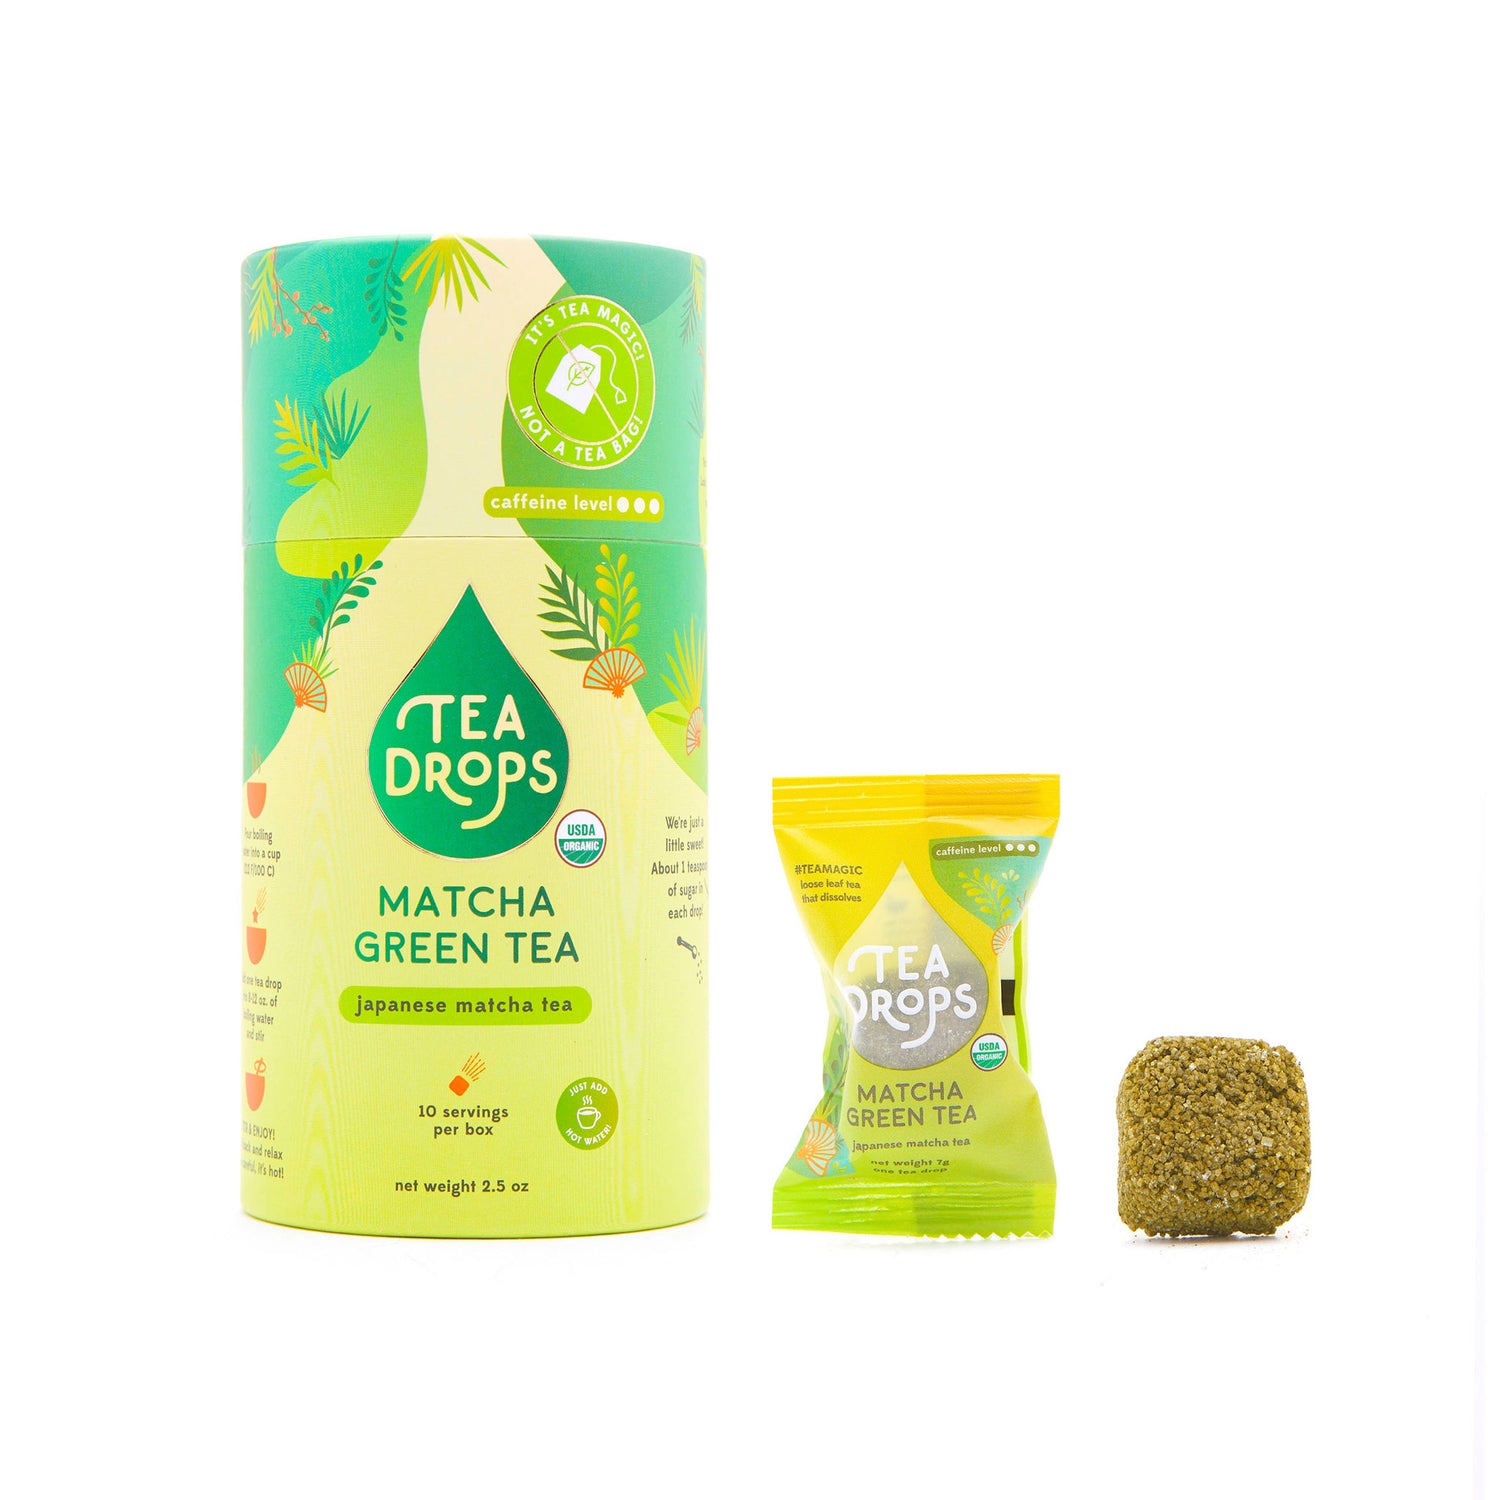 Tea Drops: Matcha Green Tea